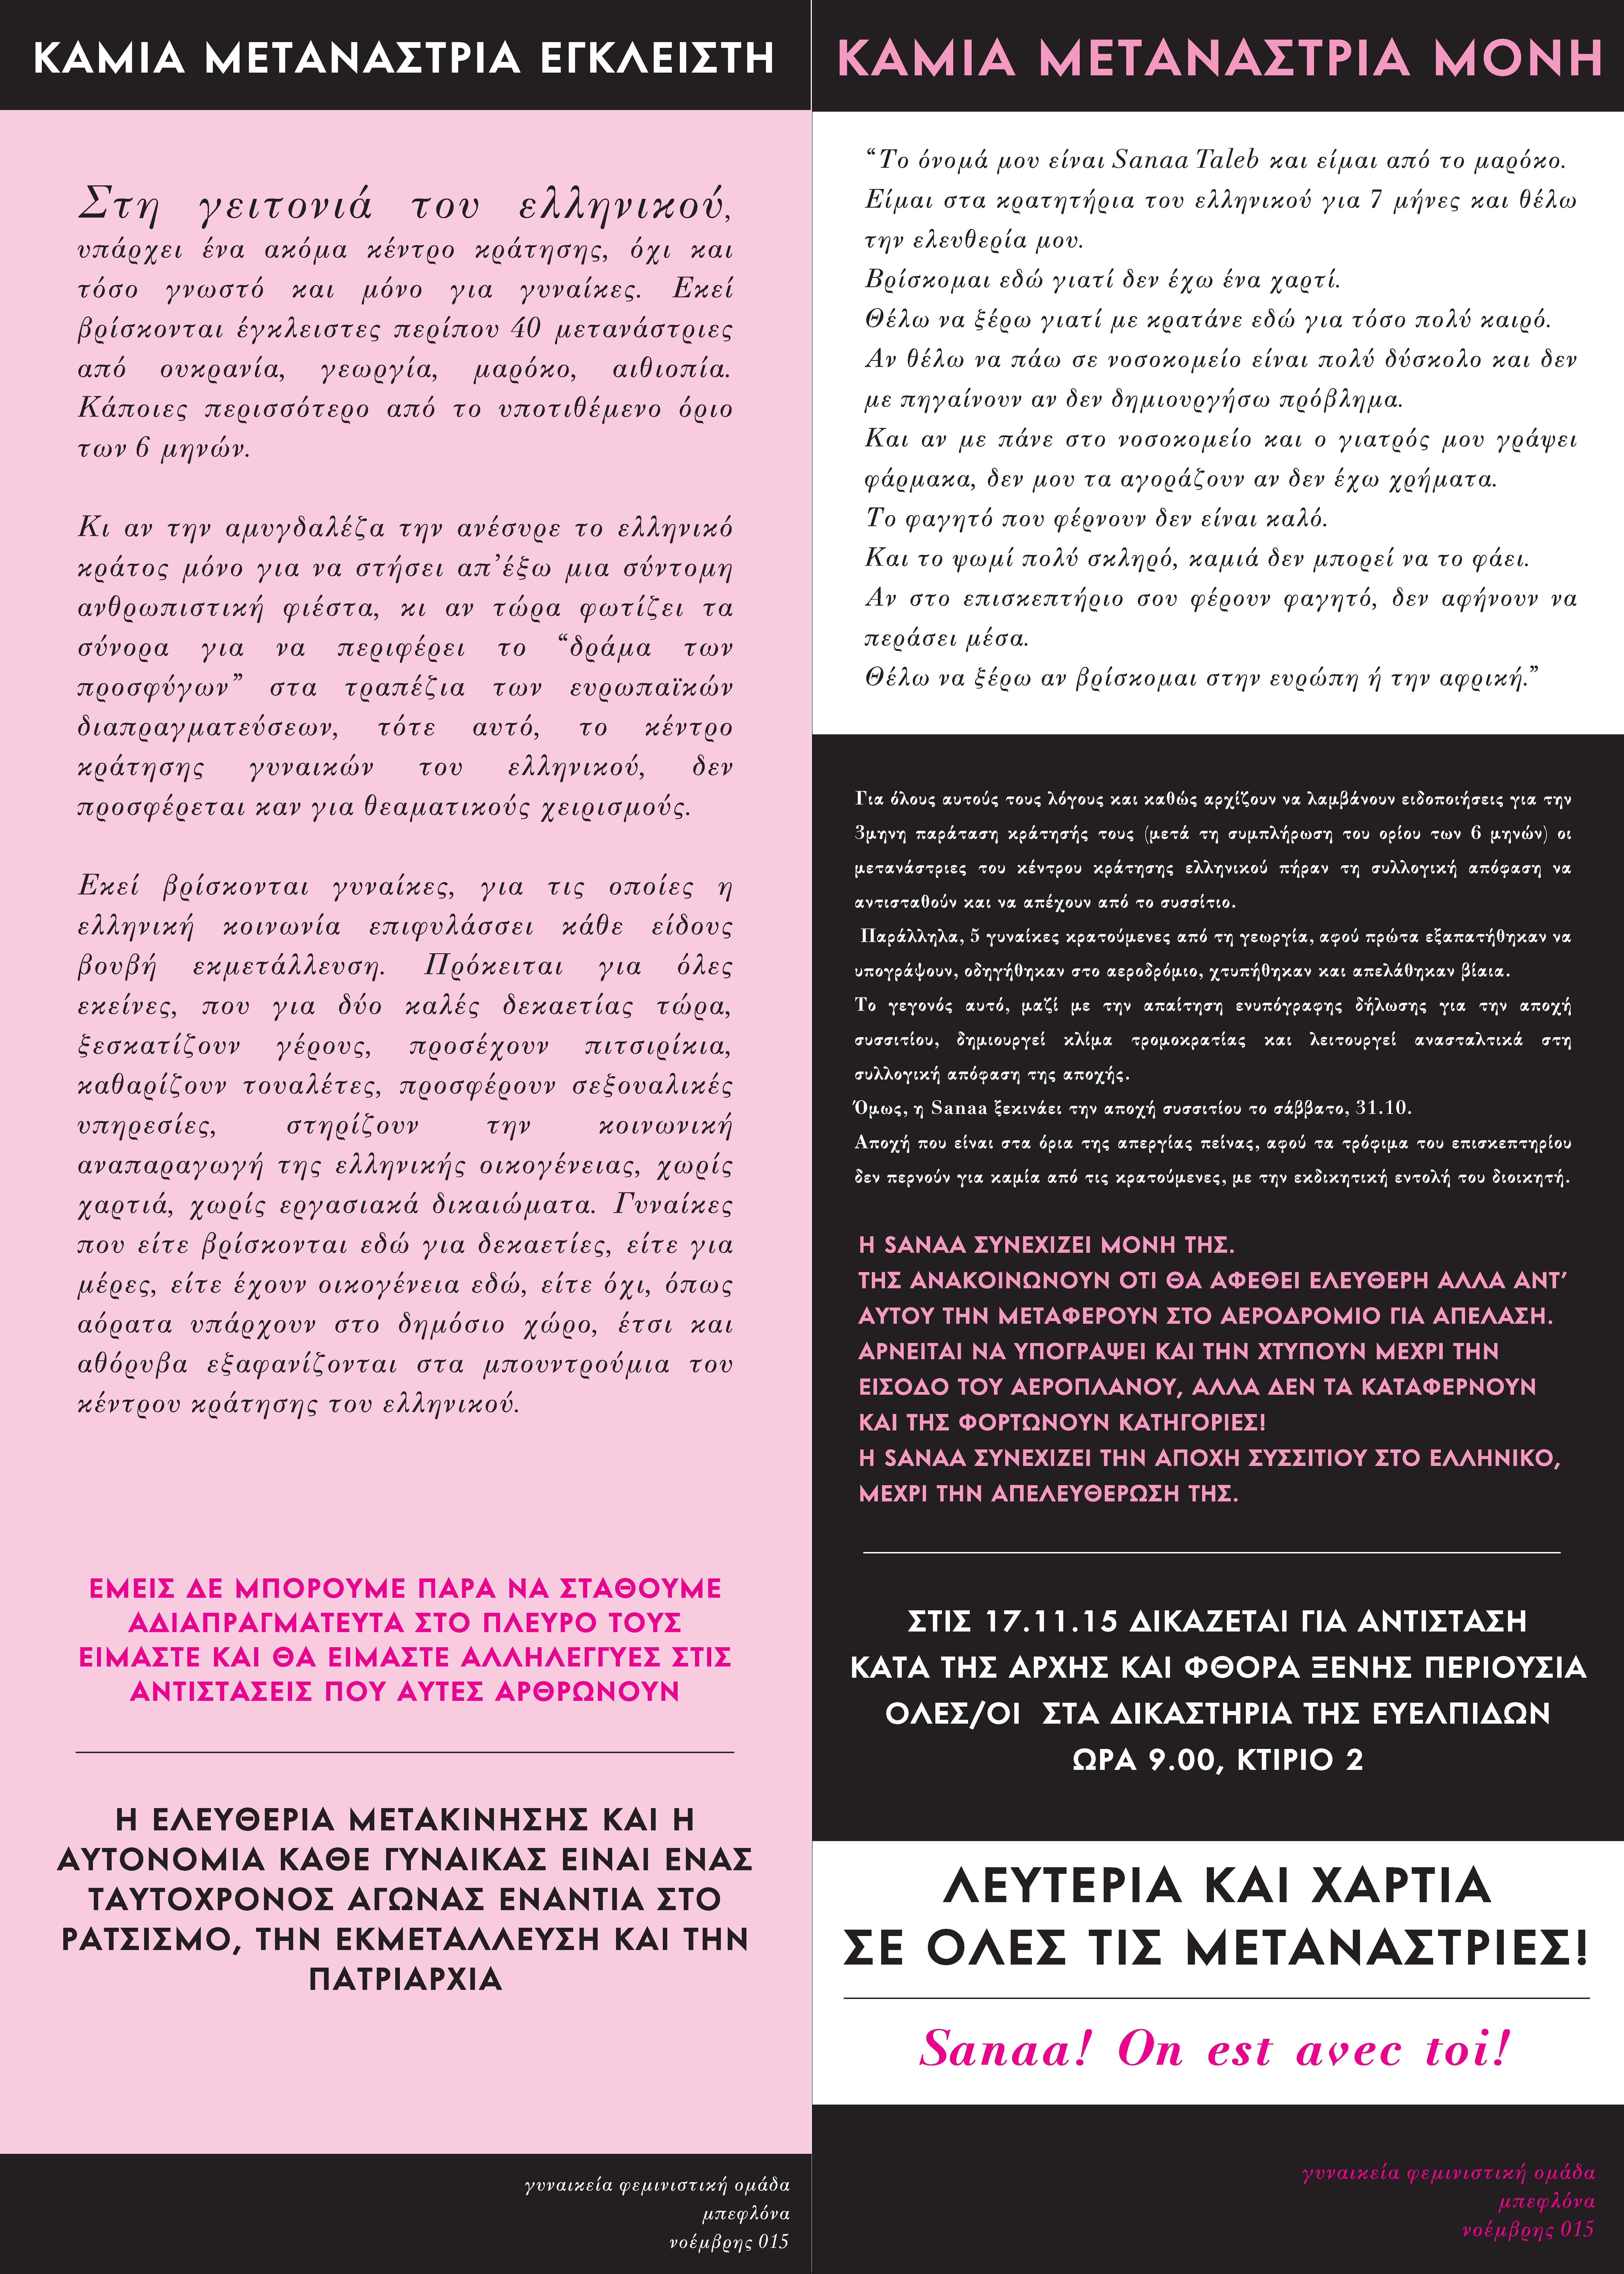 Αφίσα για τη Σάναα Τάλεμπ και το κέντρο κράτησης Ελληνικού, Νοέμβρης 2015